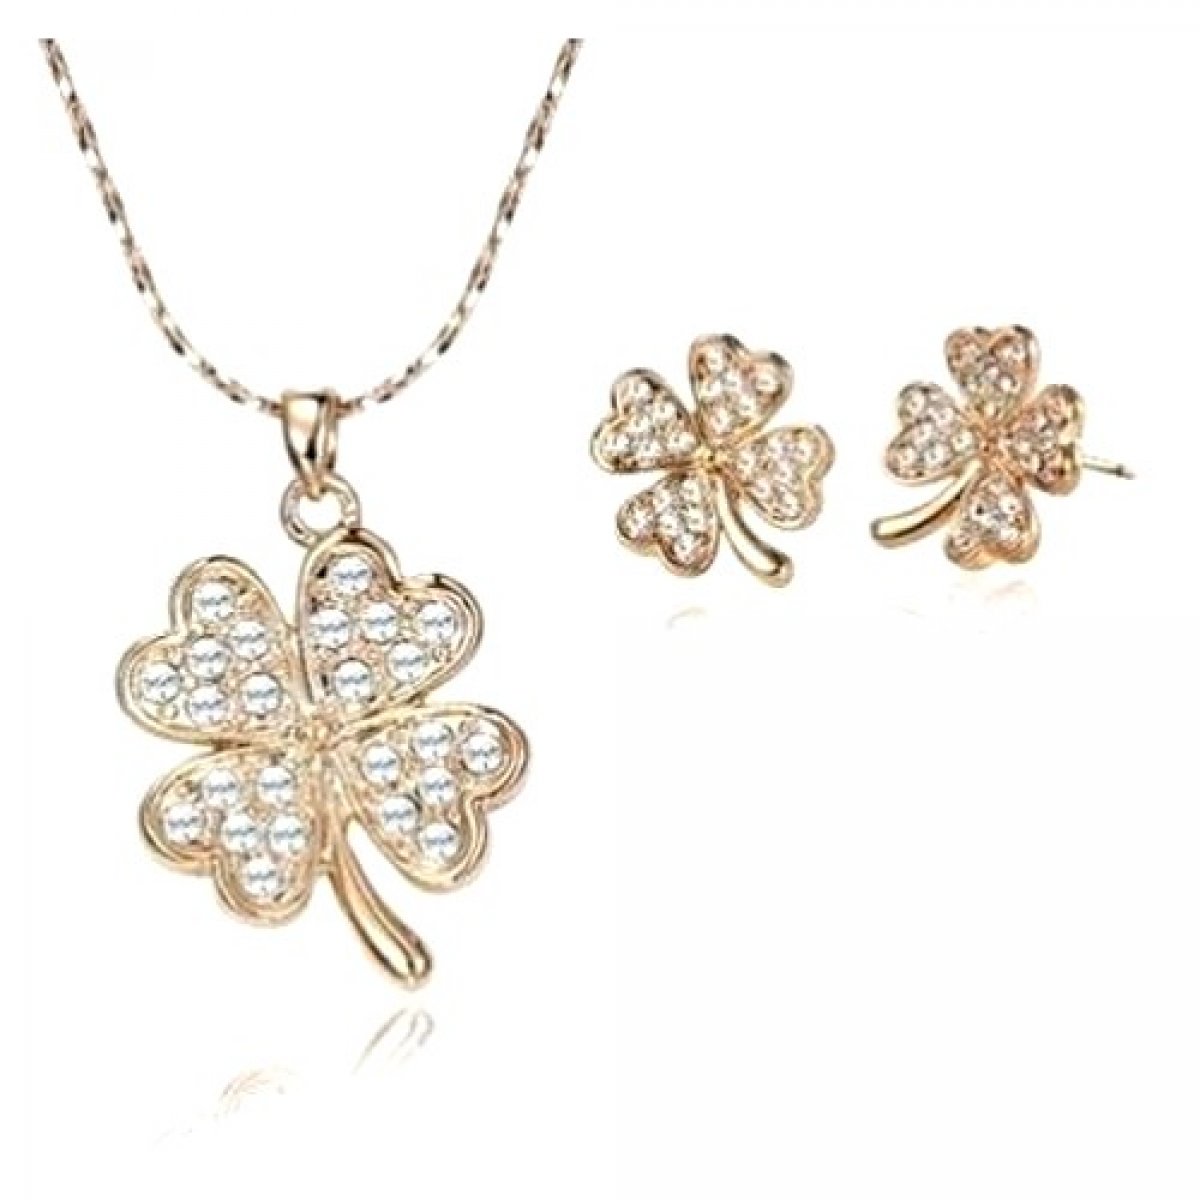 Parure bijoux femme - Trèfle 4 feuilles - Plaqué rhodié ton or et cristal clair 